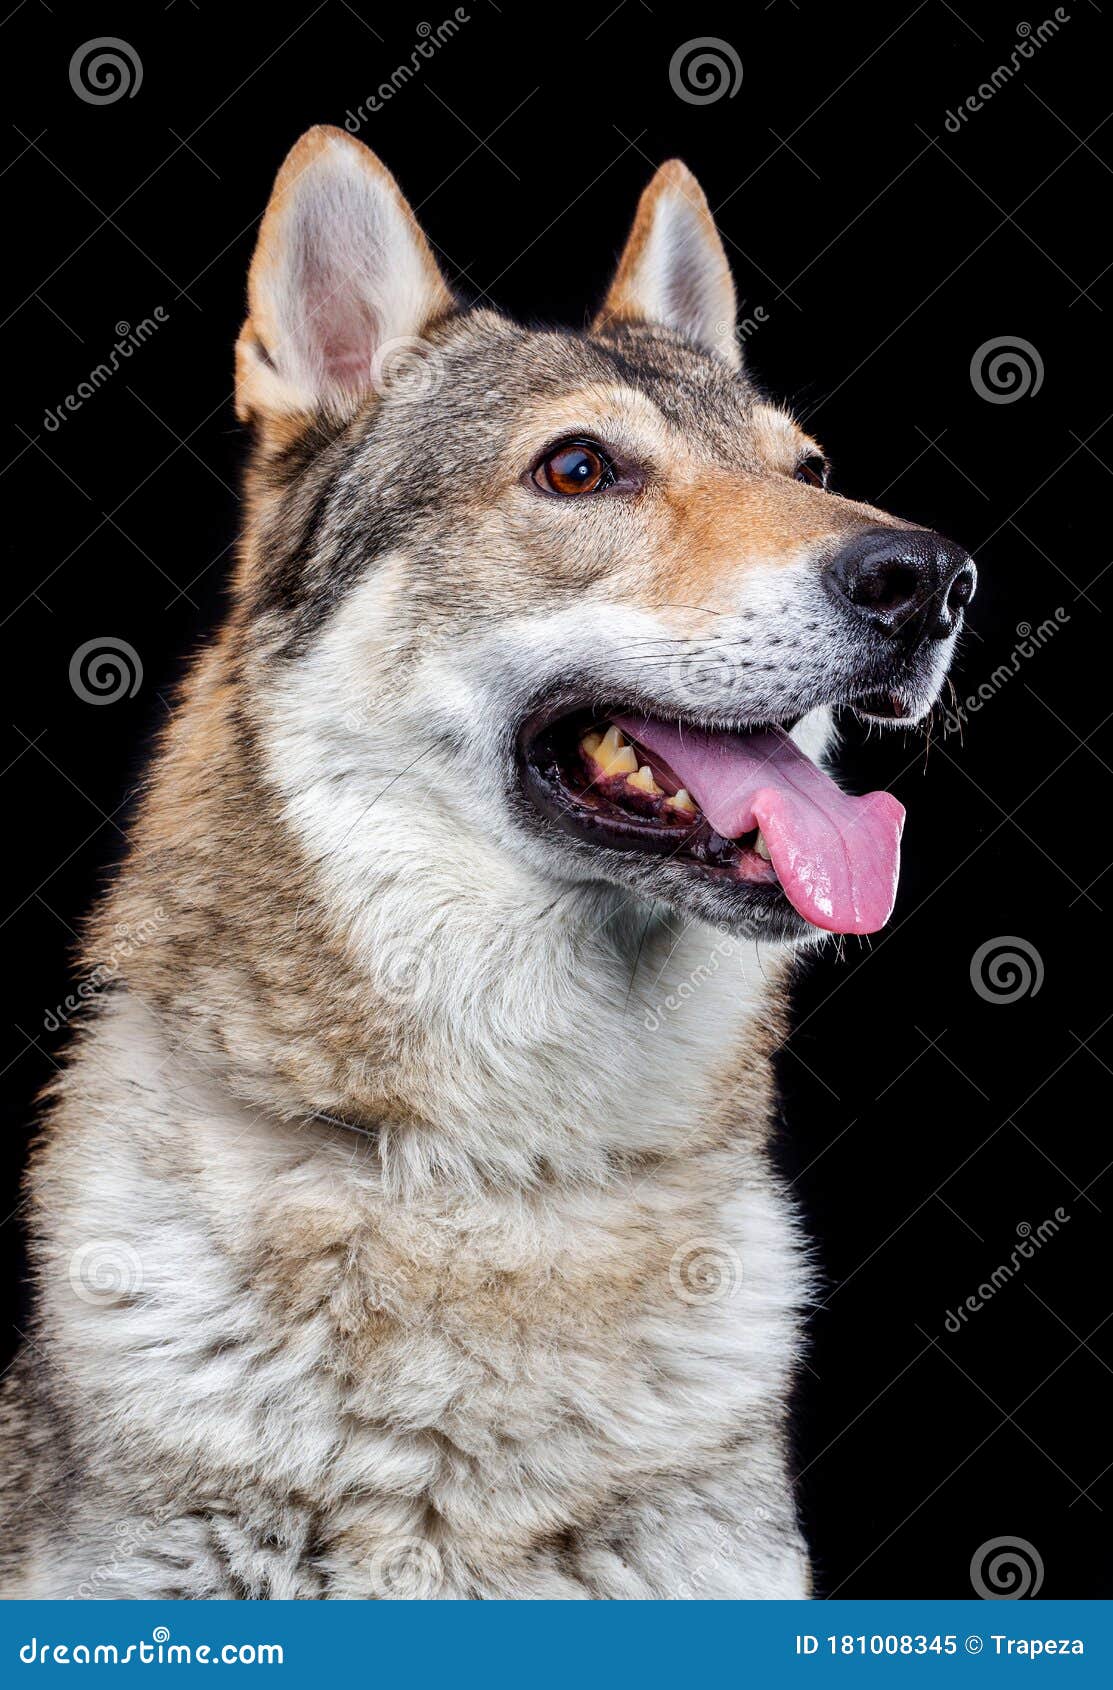 Czechoslovakian Wolfdog Dog Studio Photography On A Black Background Stock Image Image Of Pedigree Canine 181008345